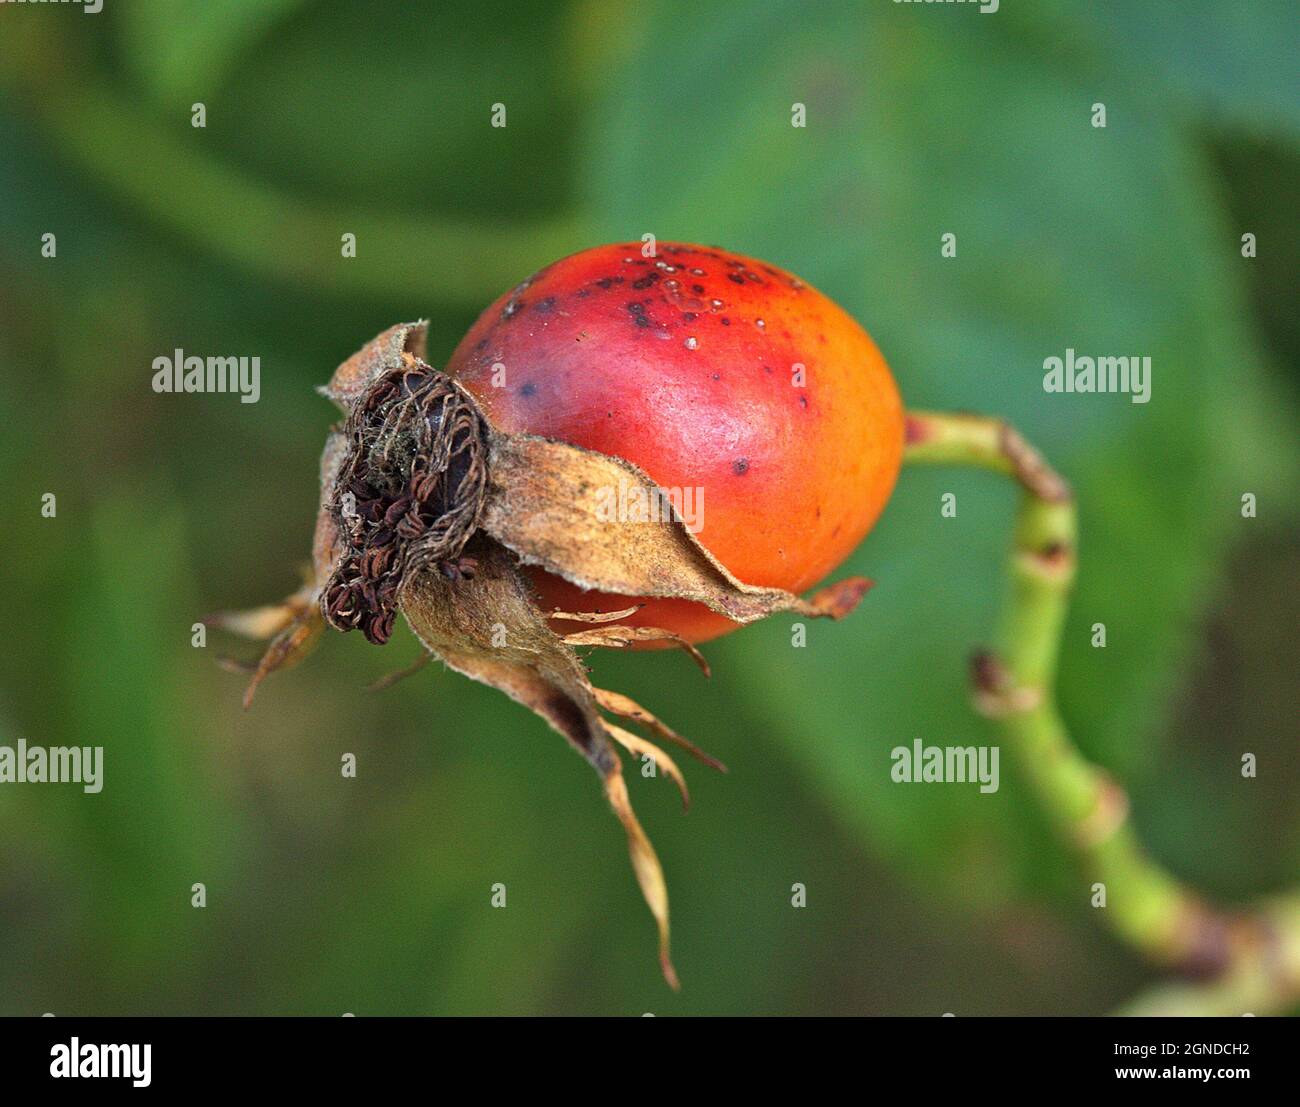 Nahaufnahme einer reifen Hagebutte, der gesunden Frucht einer Rose. Fokus im Vordergrund. Stockfoto